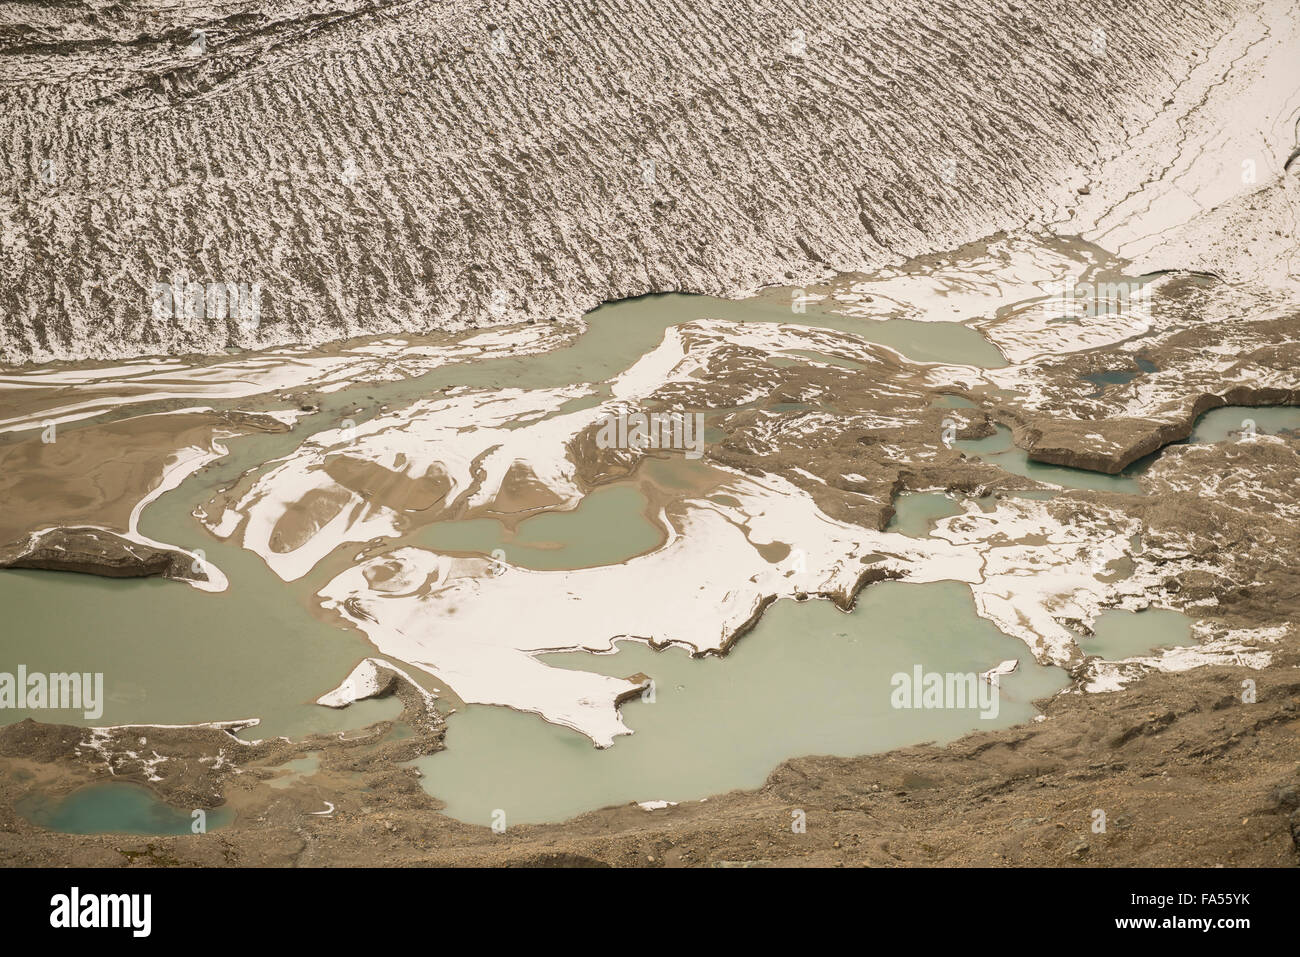 Angolo di alta vista del flusso congelato, ghiacciaio Pasterze, il Parco Nazionale degli Alti Tauri, Carinzia, Austria Foto Stock